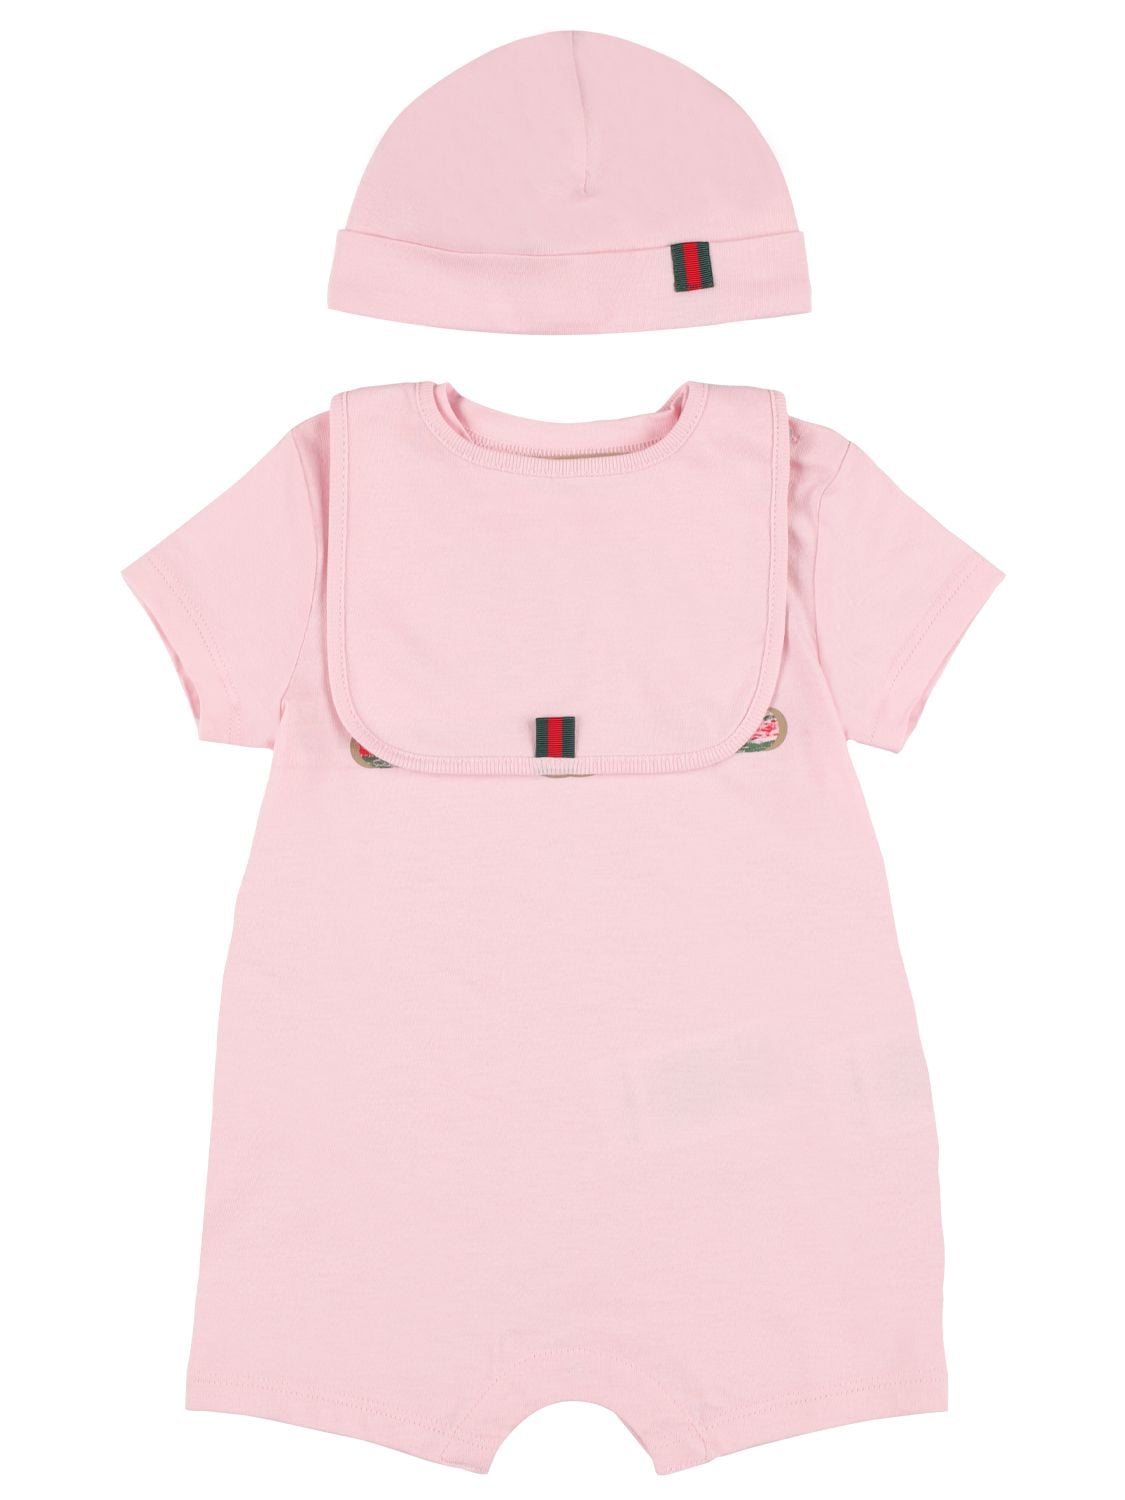 Gucci Babies' Logo Print Cotton Romper, Hat & Bib In Light Pink